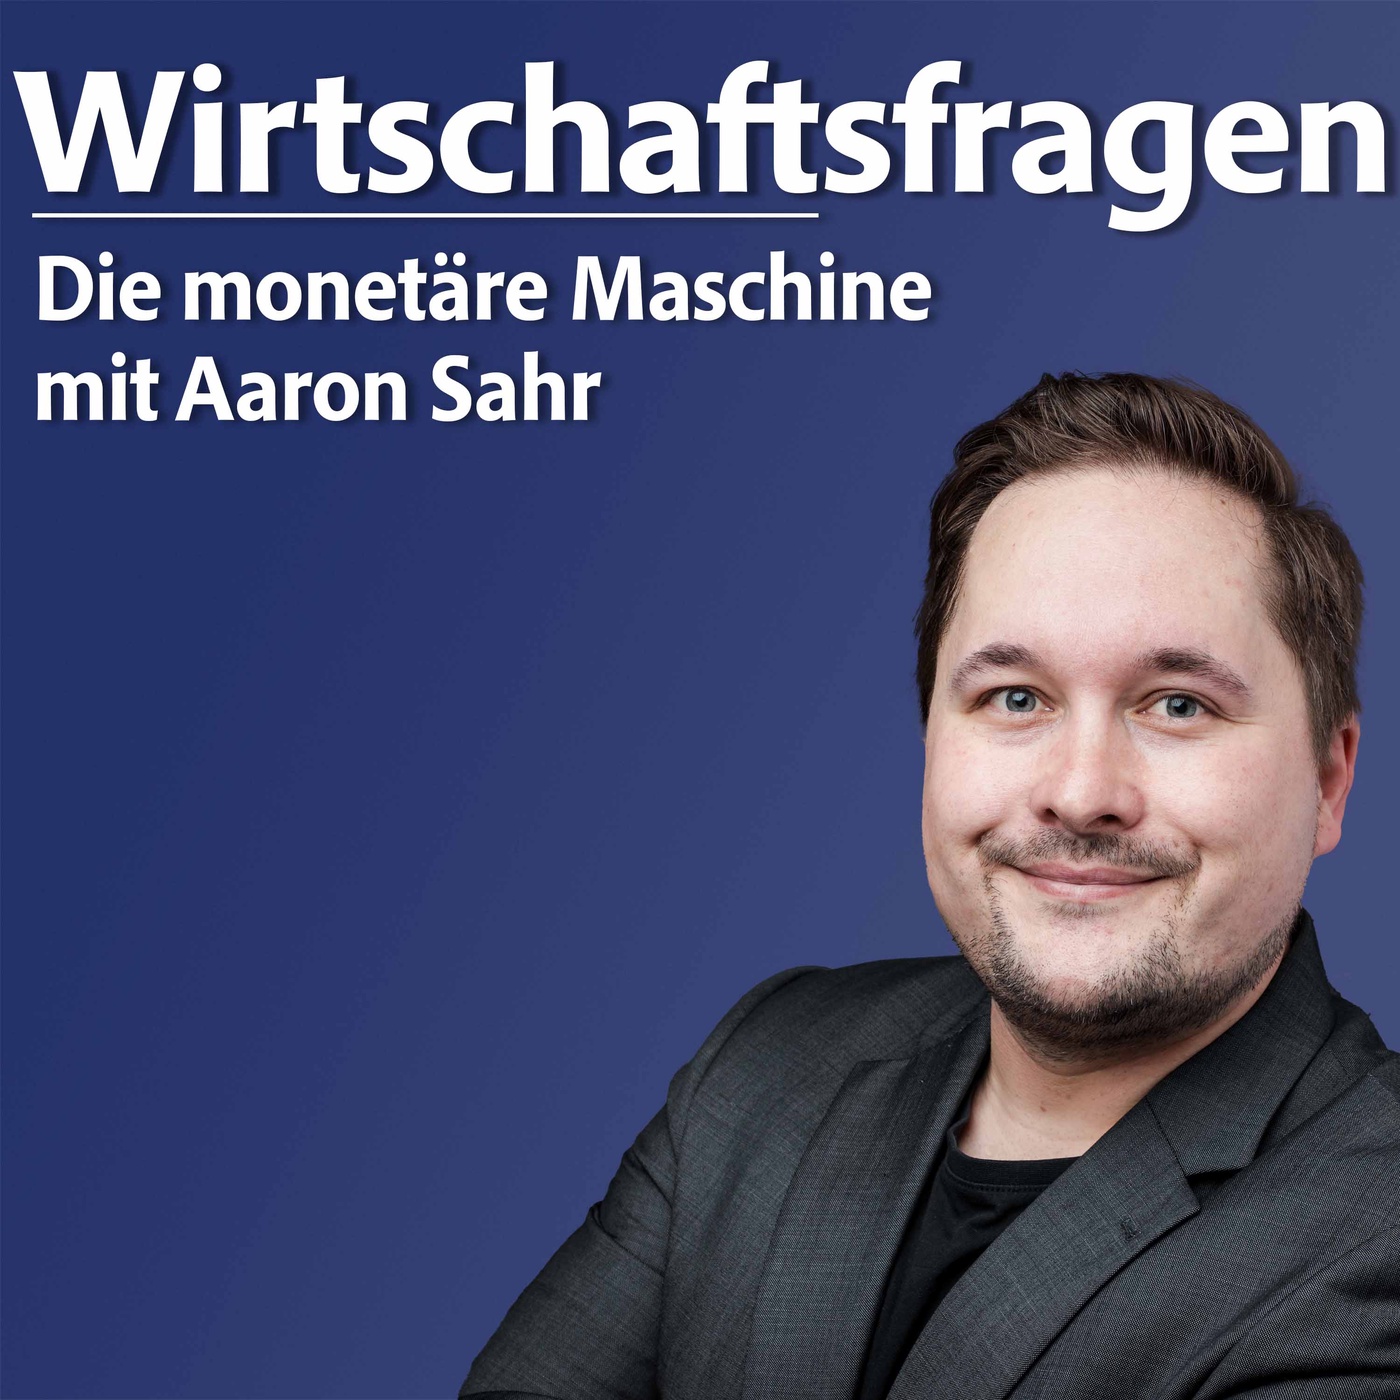 Die monetäre Maschine – mit Prof. Aaron Sahr